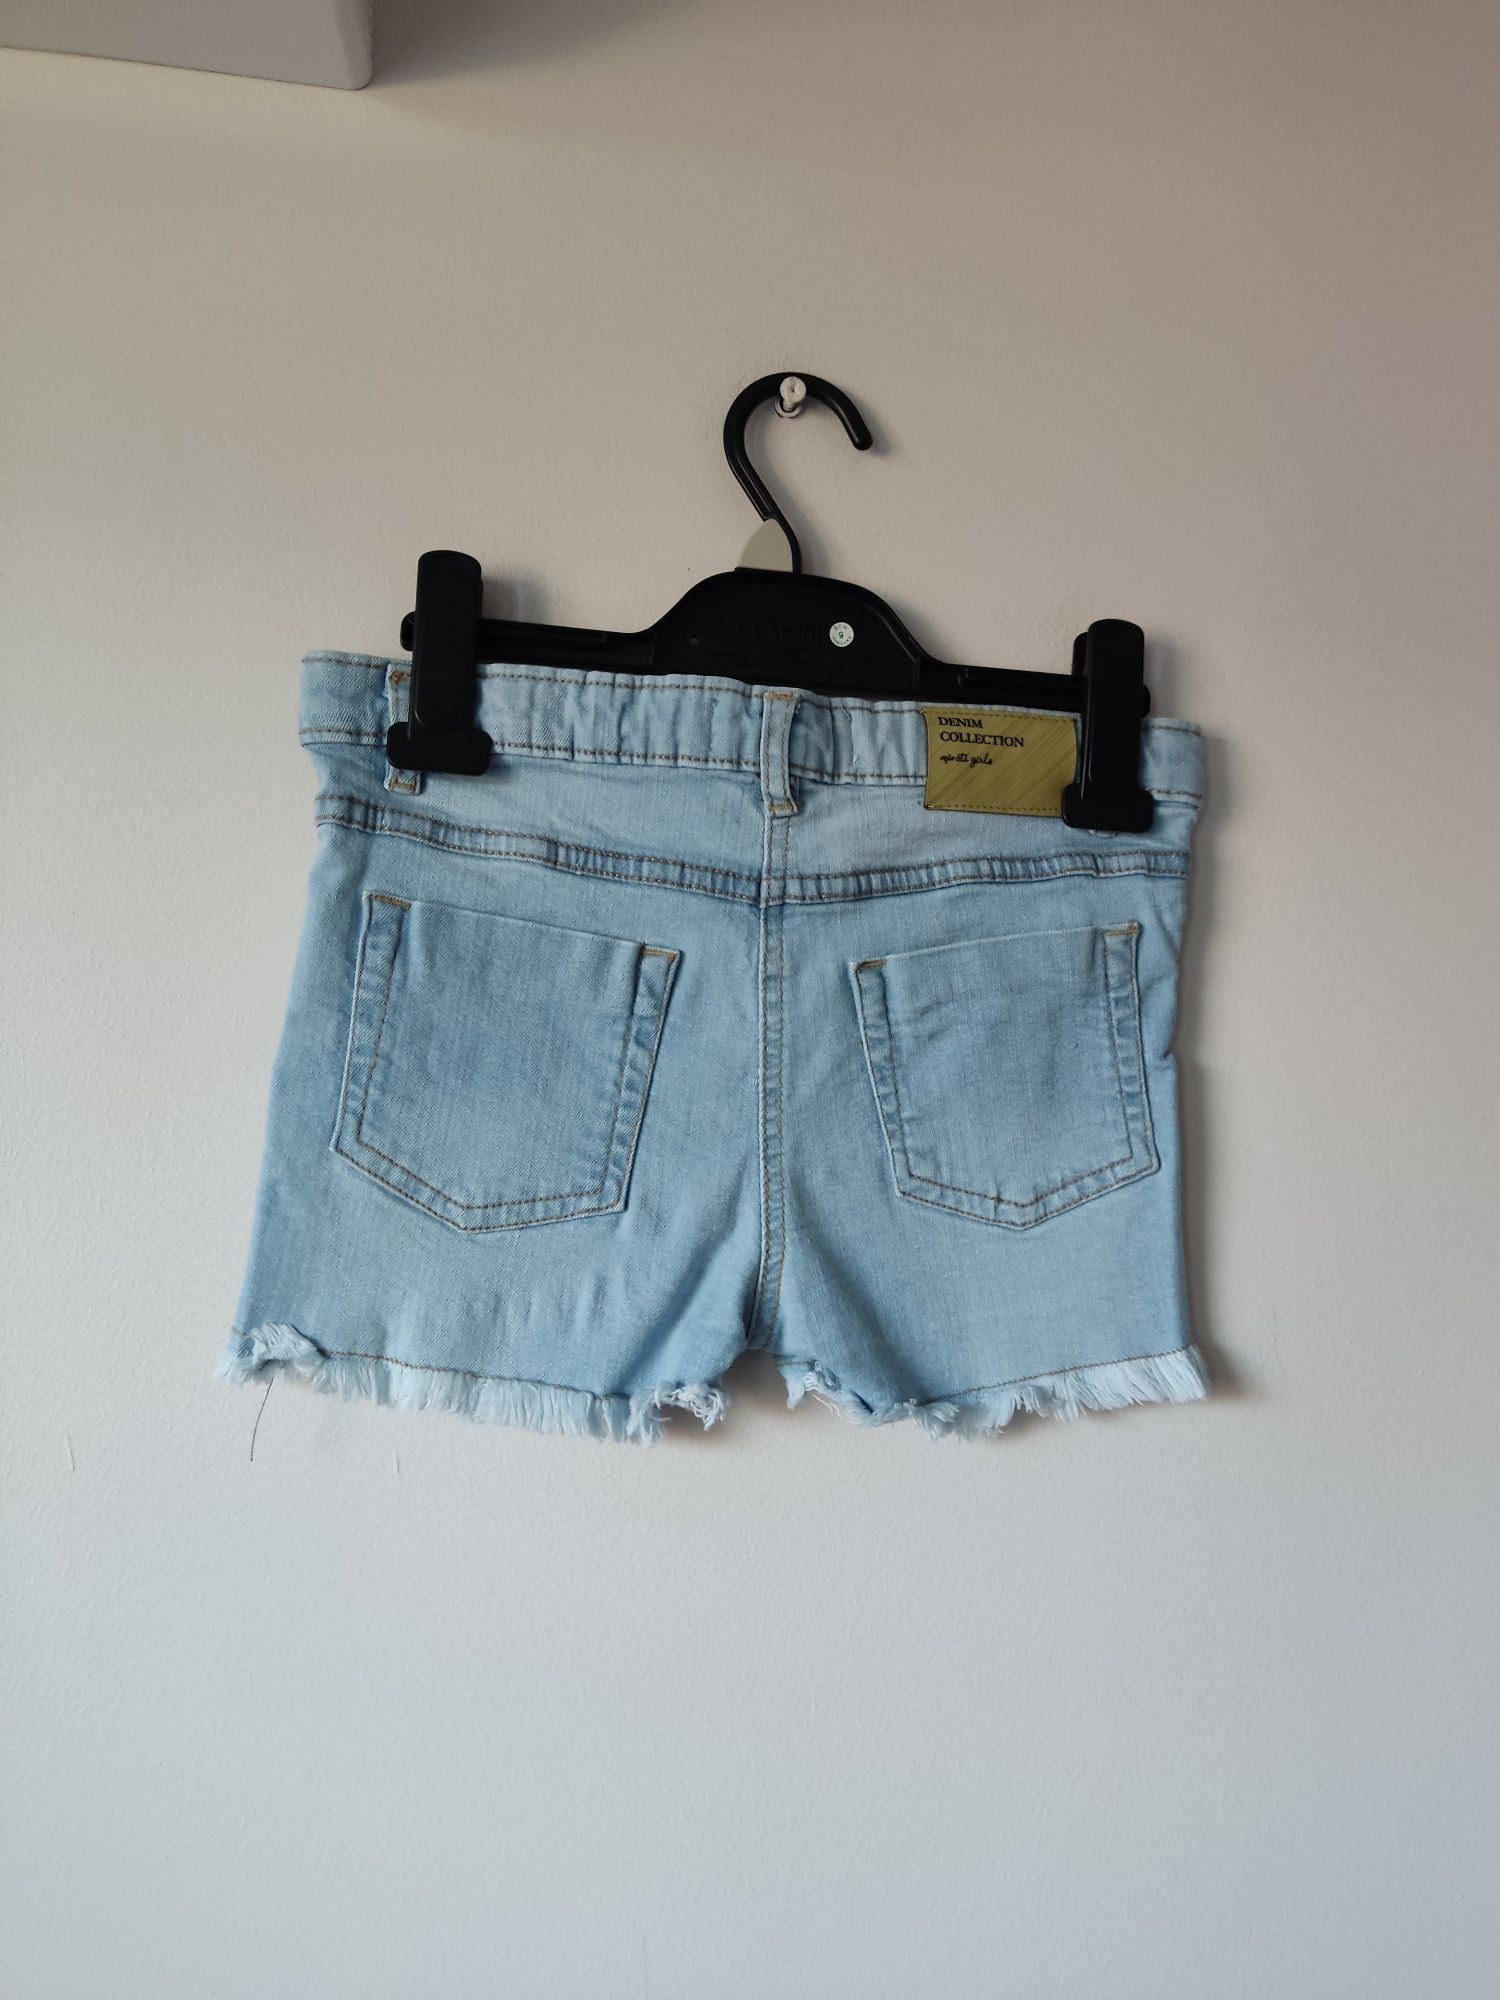 Spodenki krótkie, szorty, jeans Minoti,r.128/134